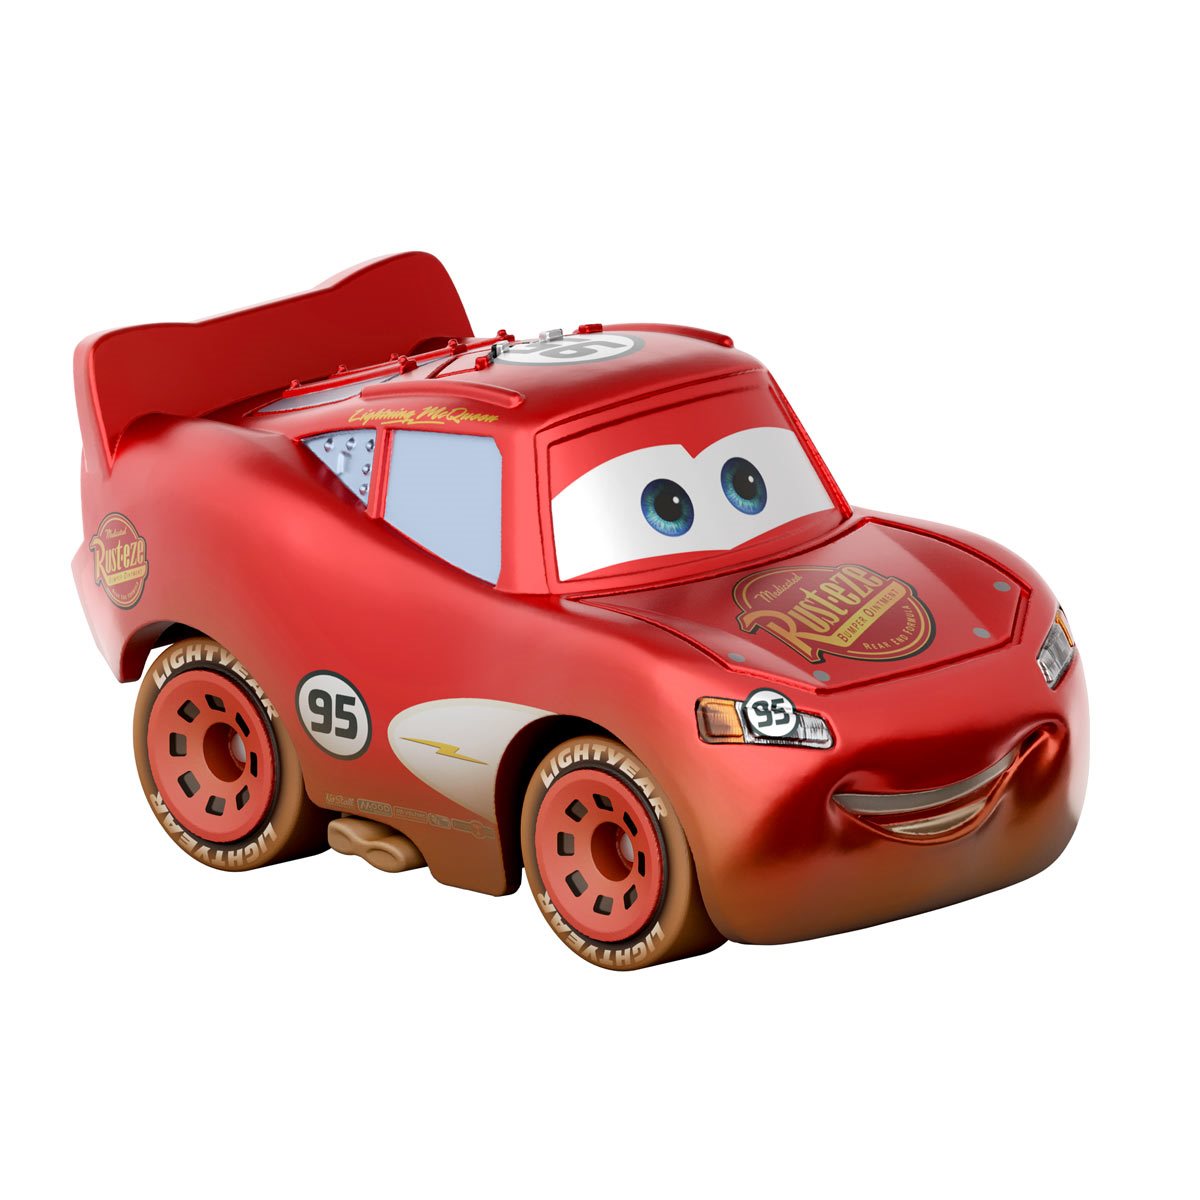  Disney Pixar Cars Mini Racers Racing Tractors 3-Pack